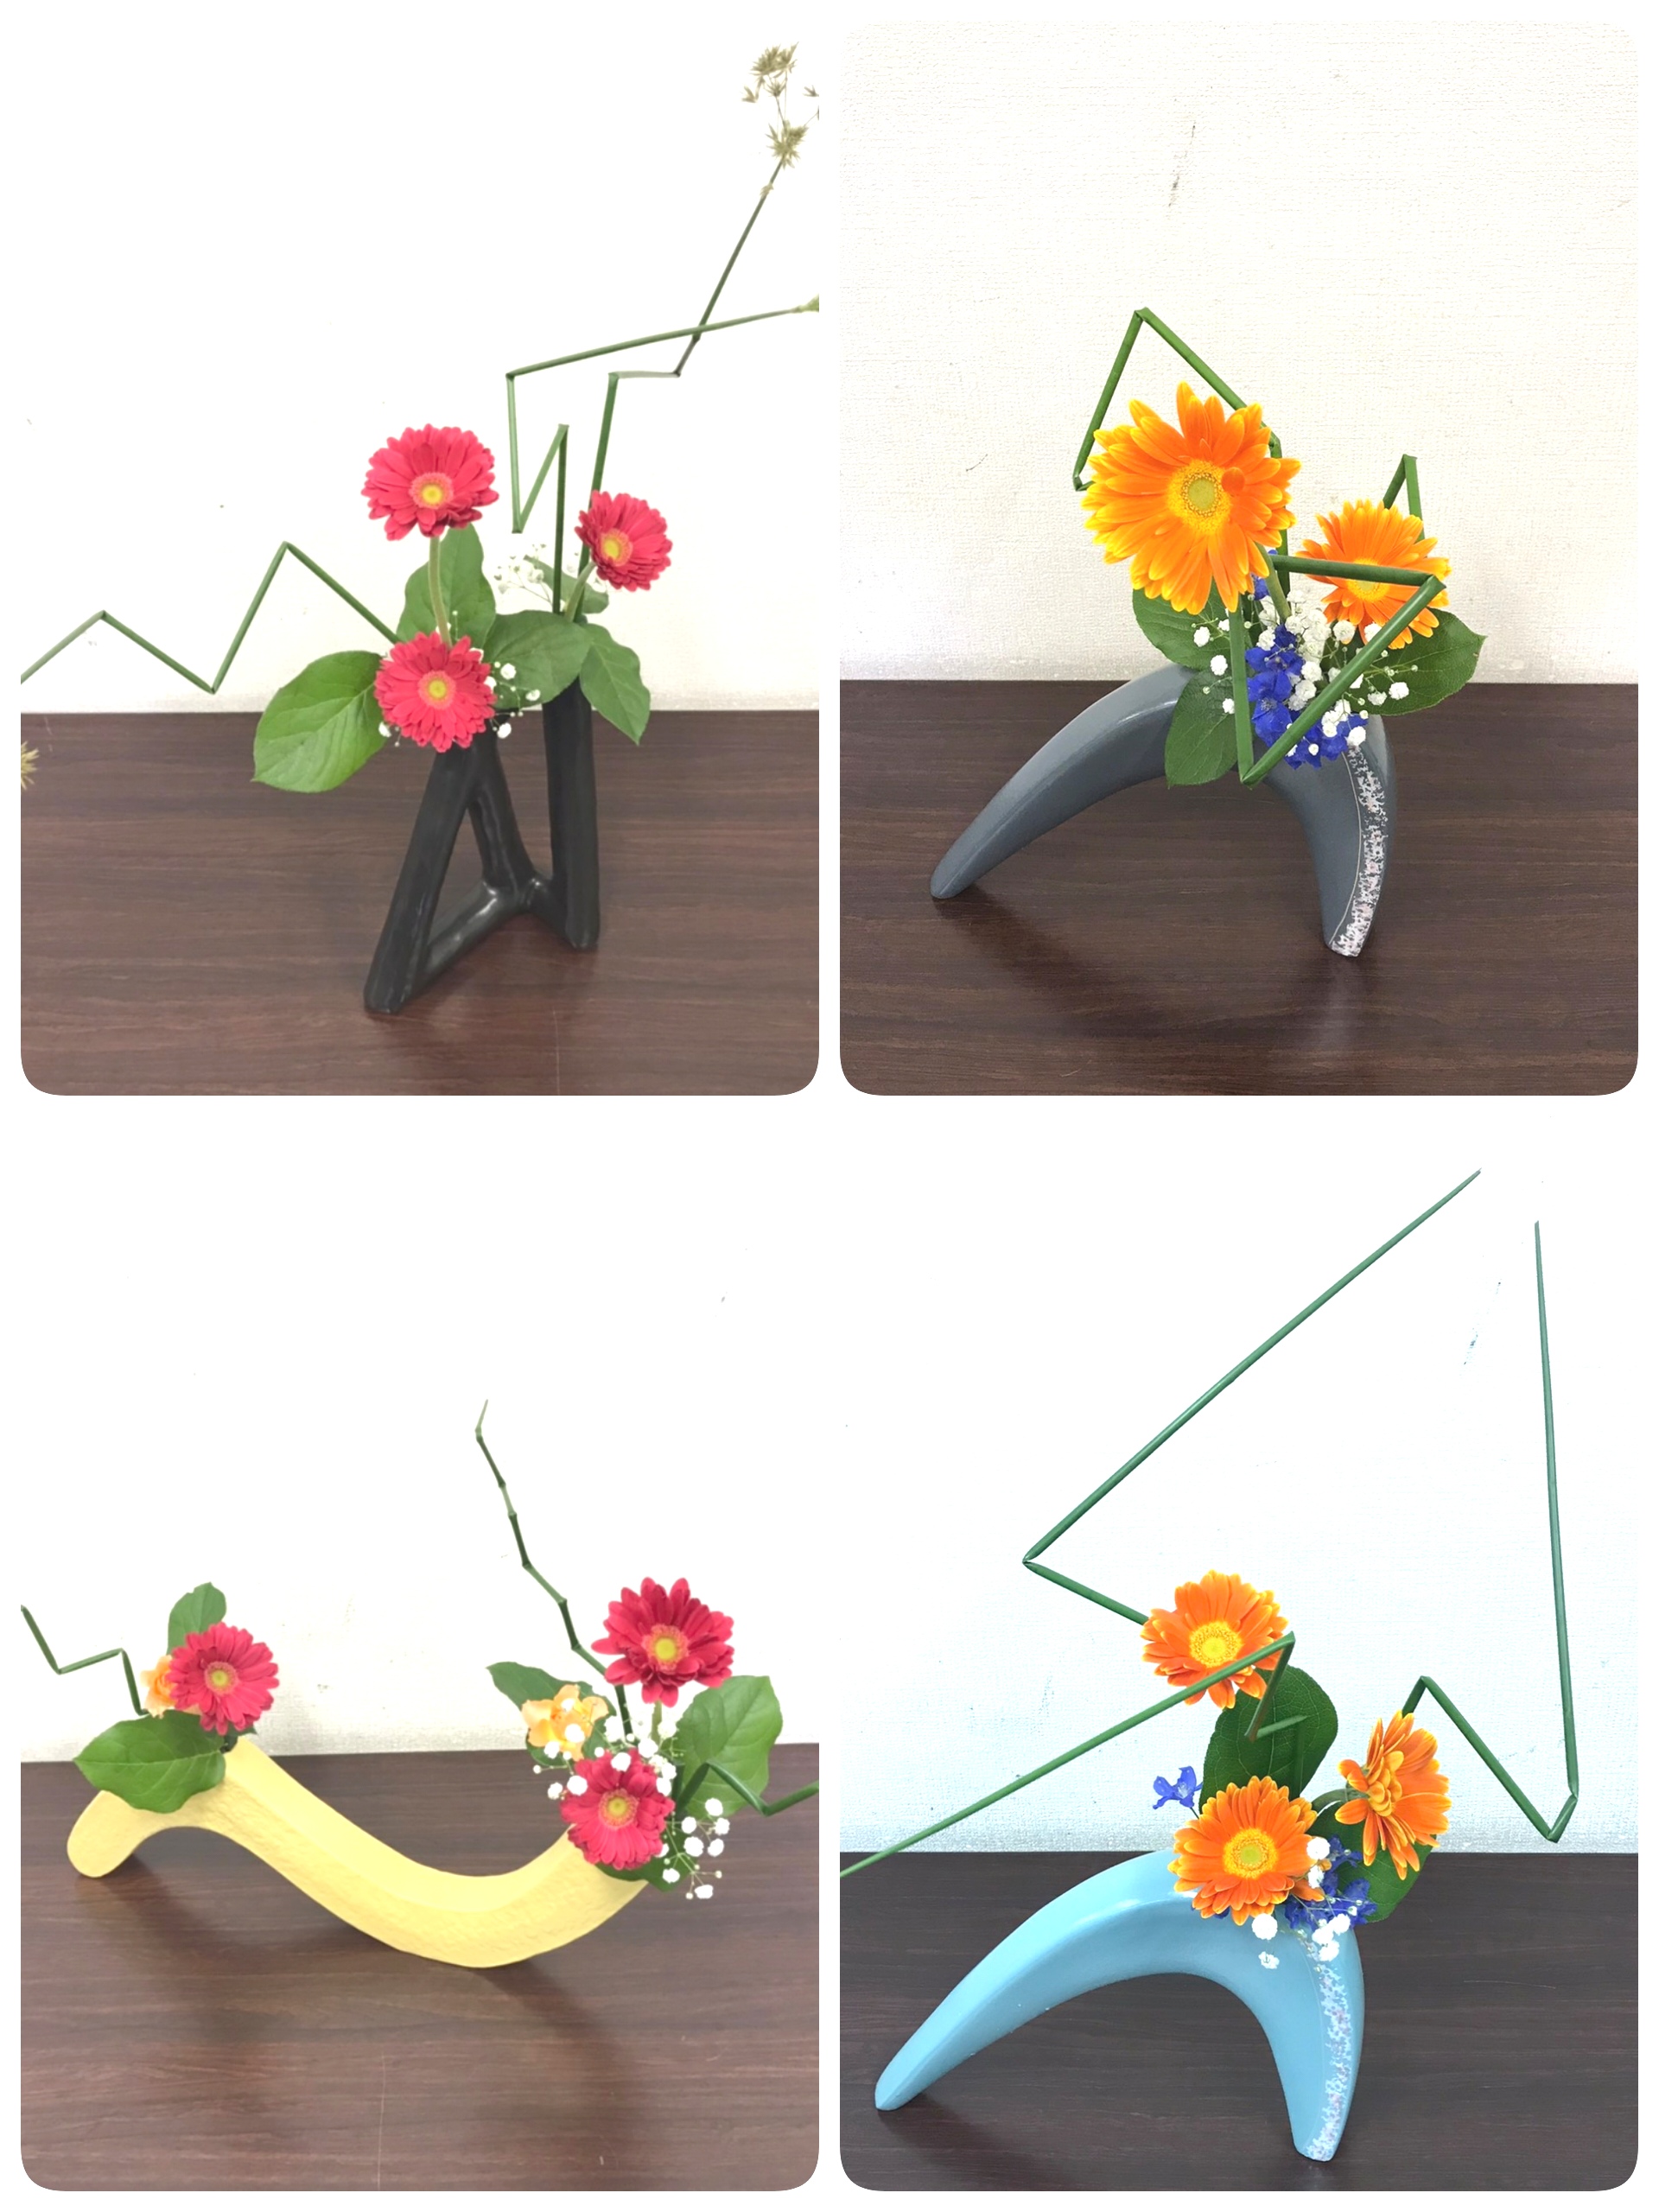 変形花器を見つめ構築を考える | 生け花教室（華道育成会）Flower arrangement class (flower arrangement  training society)